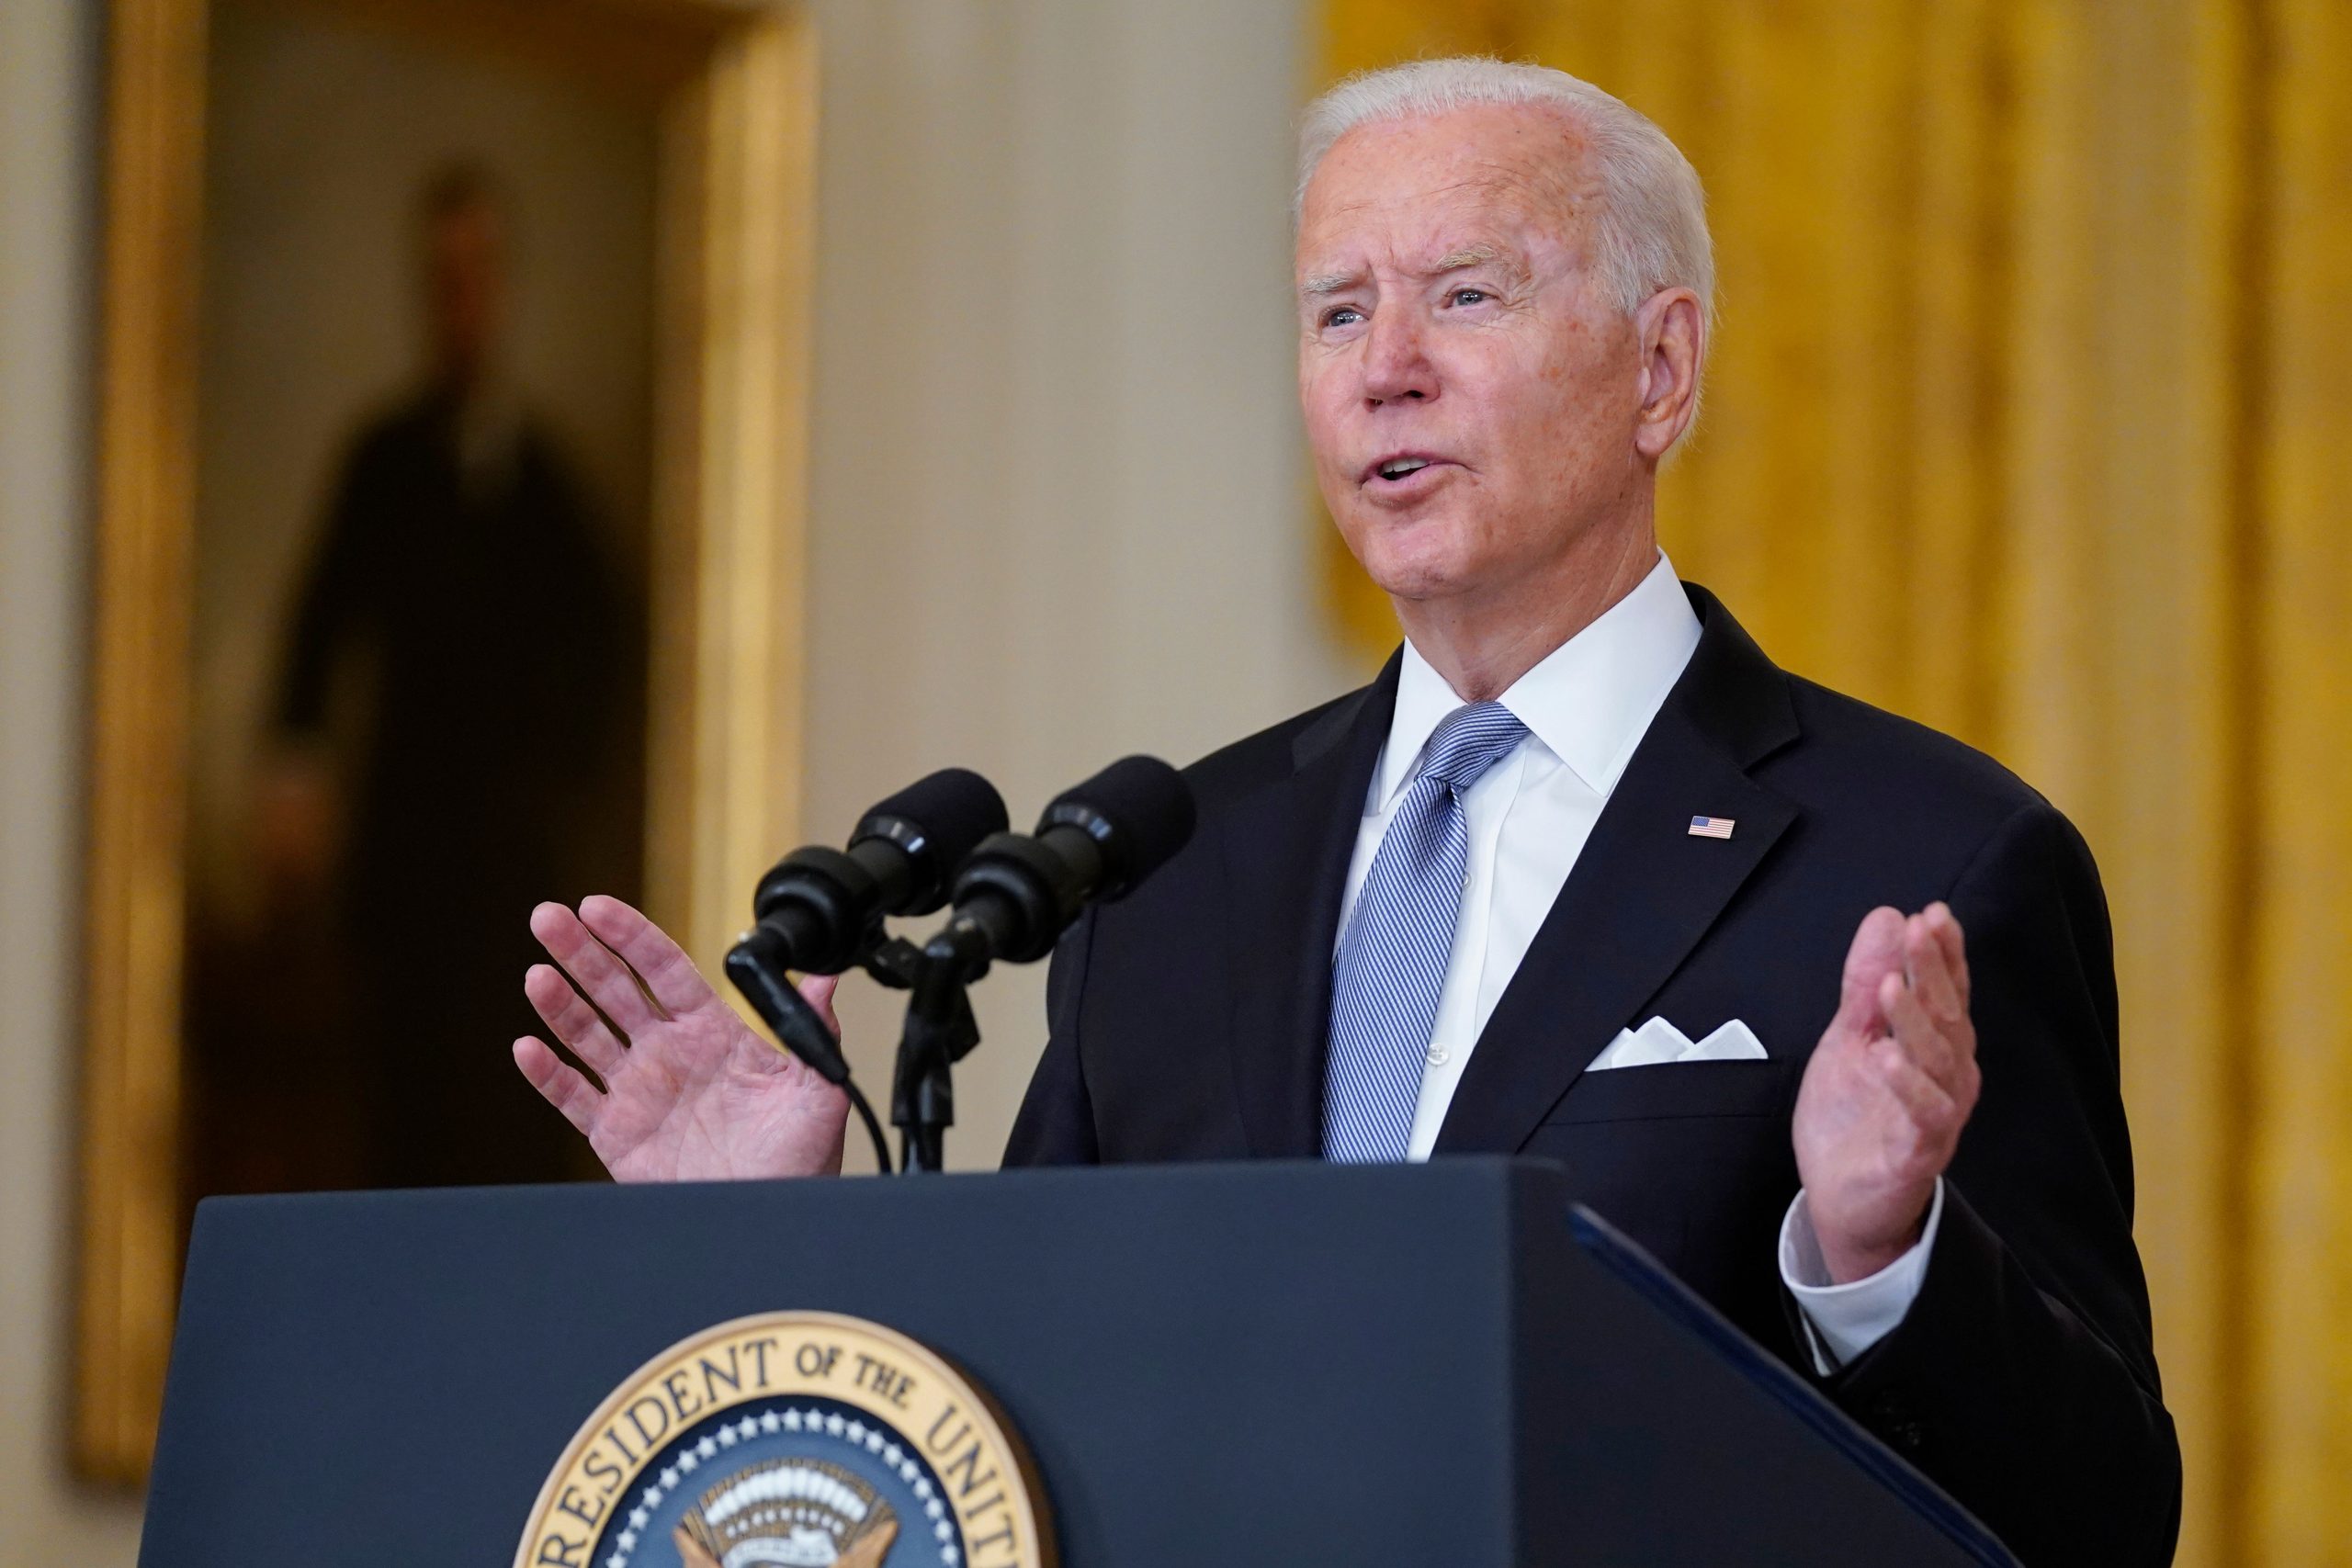 Joe Biden dismisses US’ mission of ‘nation building’ in Afghanistan